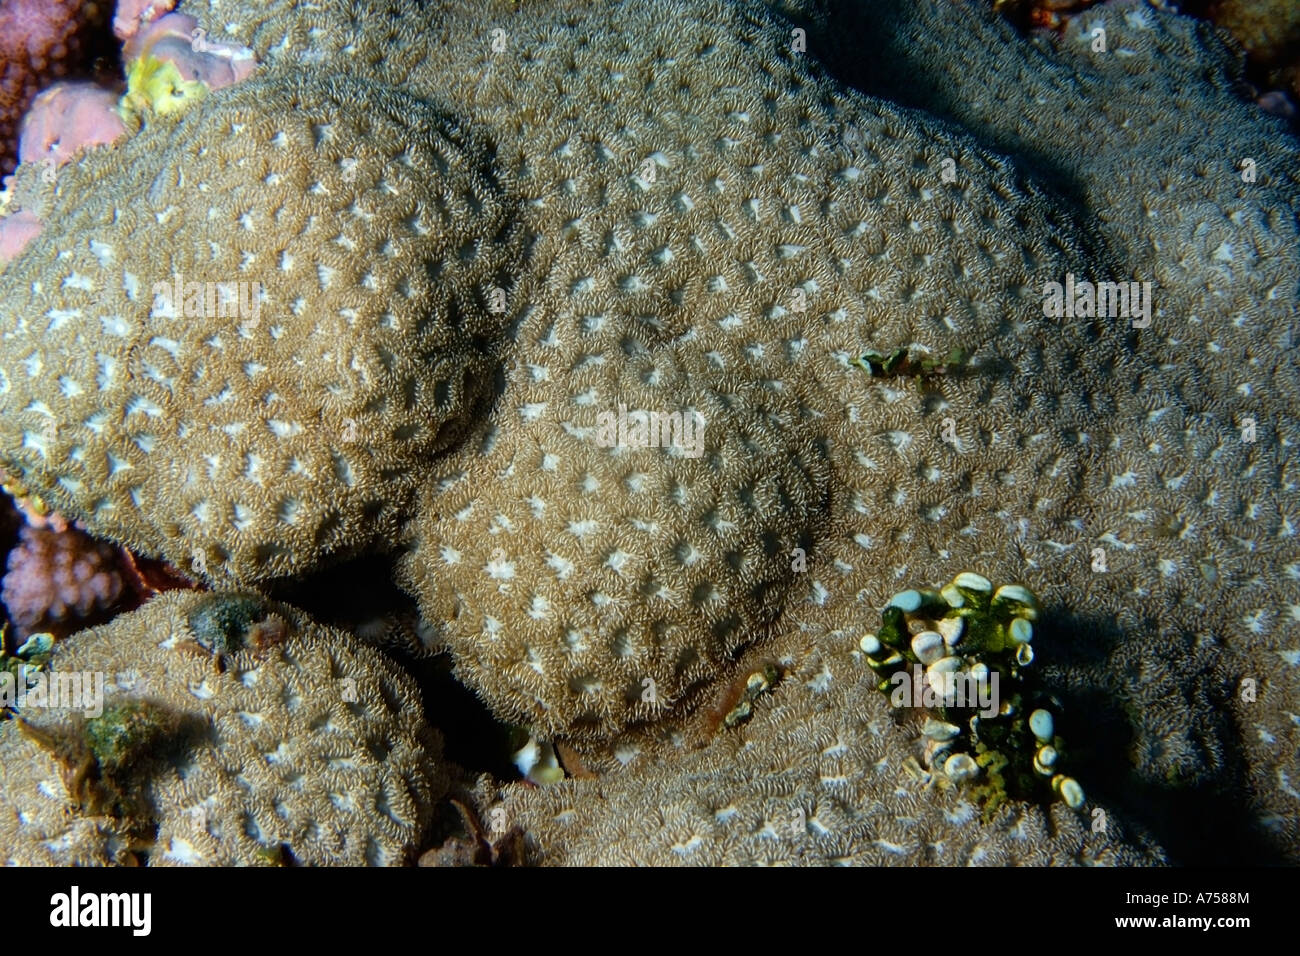 Coral duro no identificado Jaboan atolón Rongelap Islas Marshall Micronesia Foto de stock